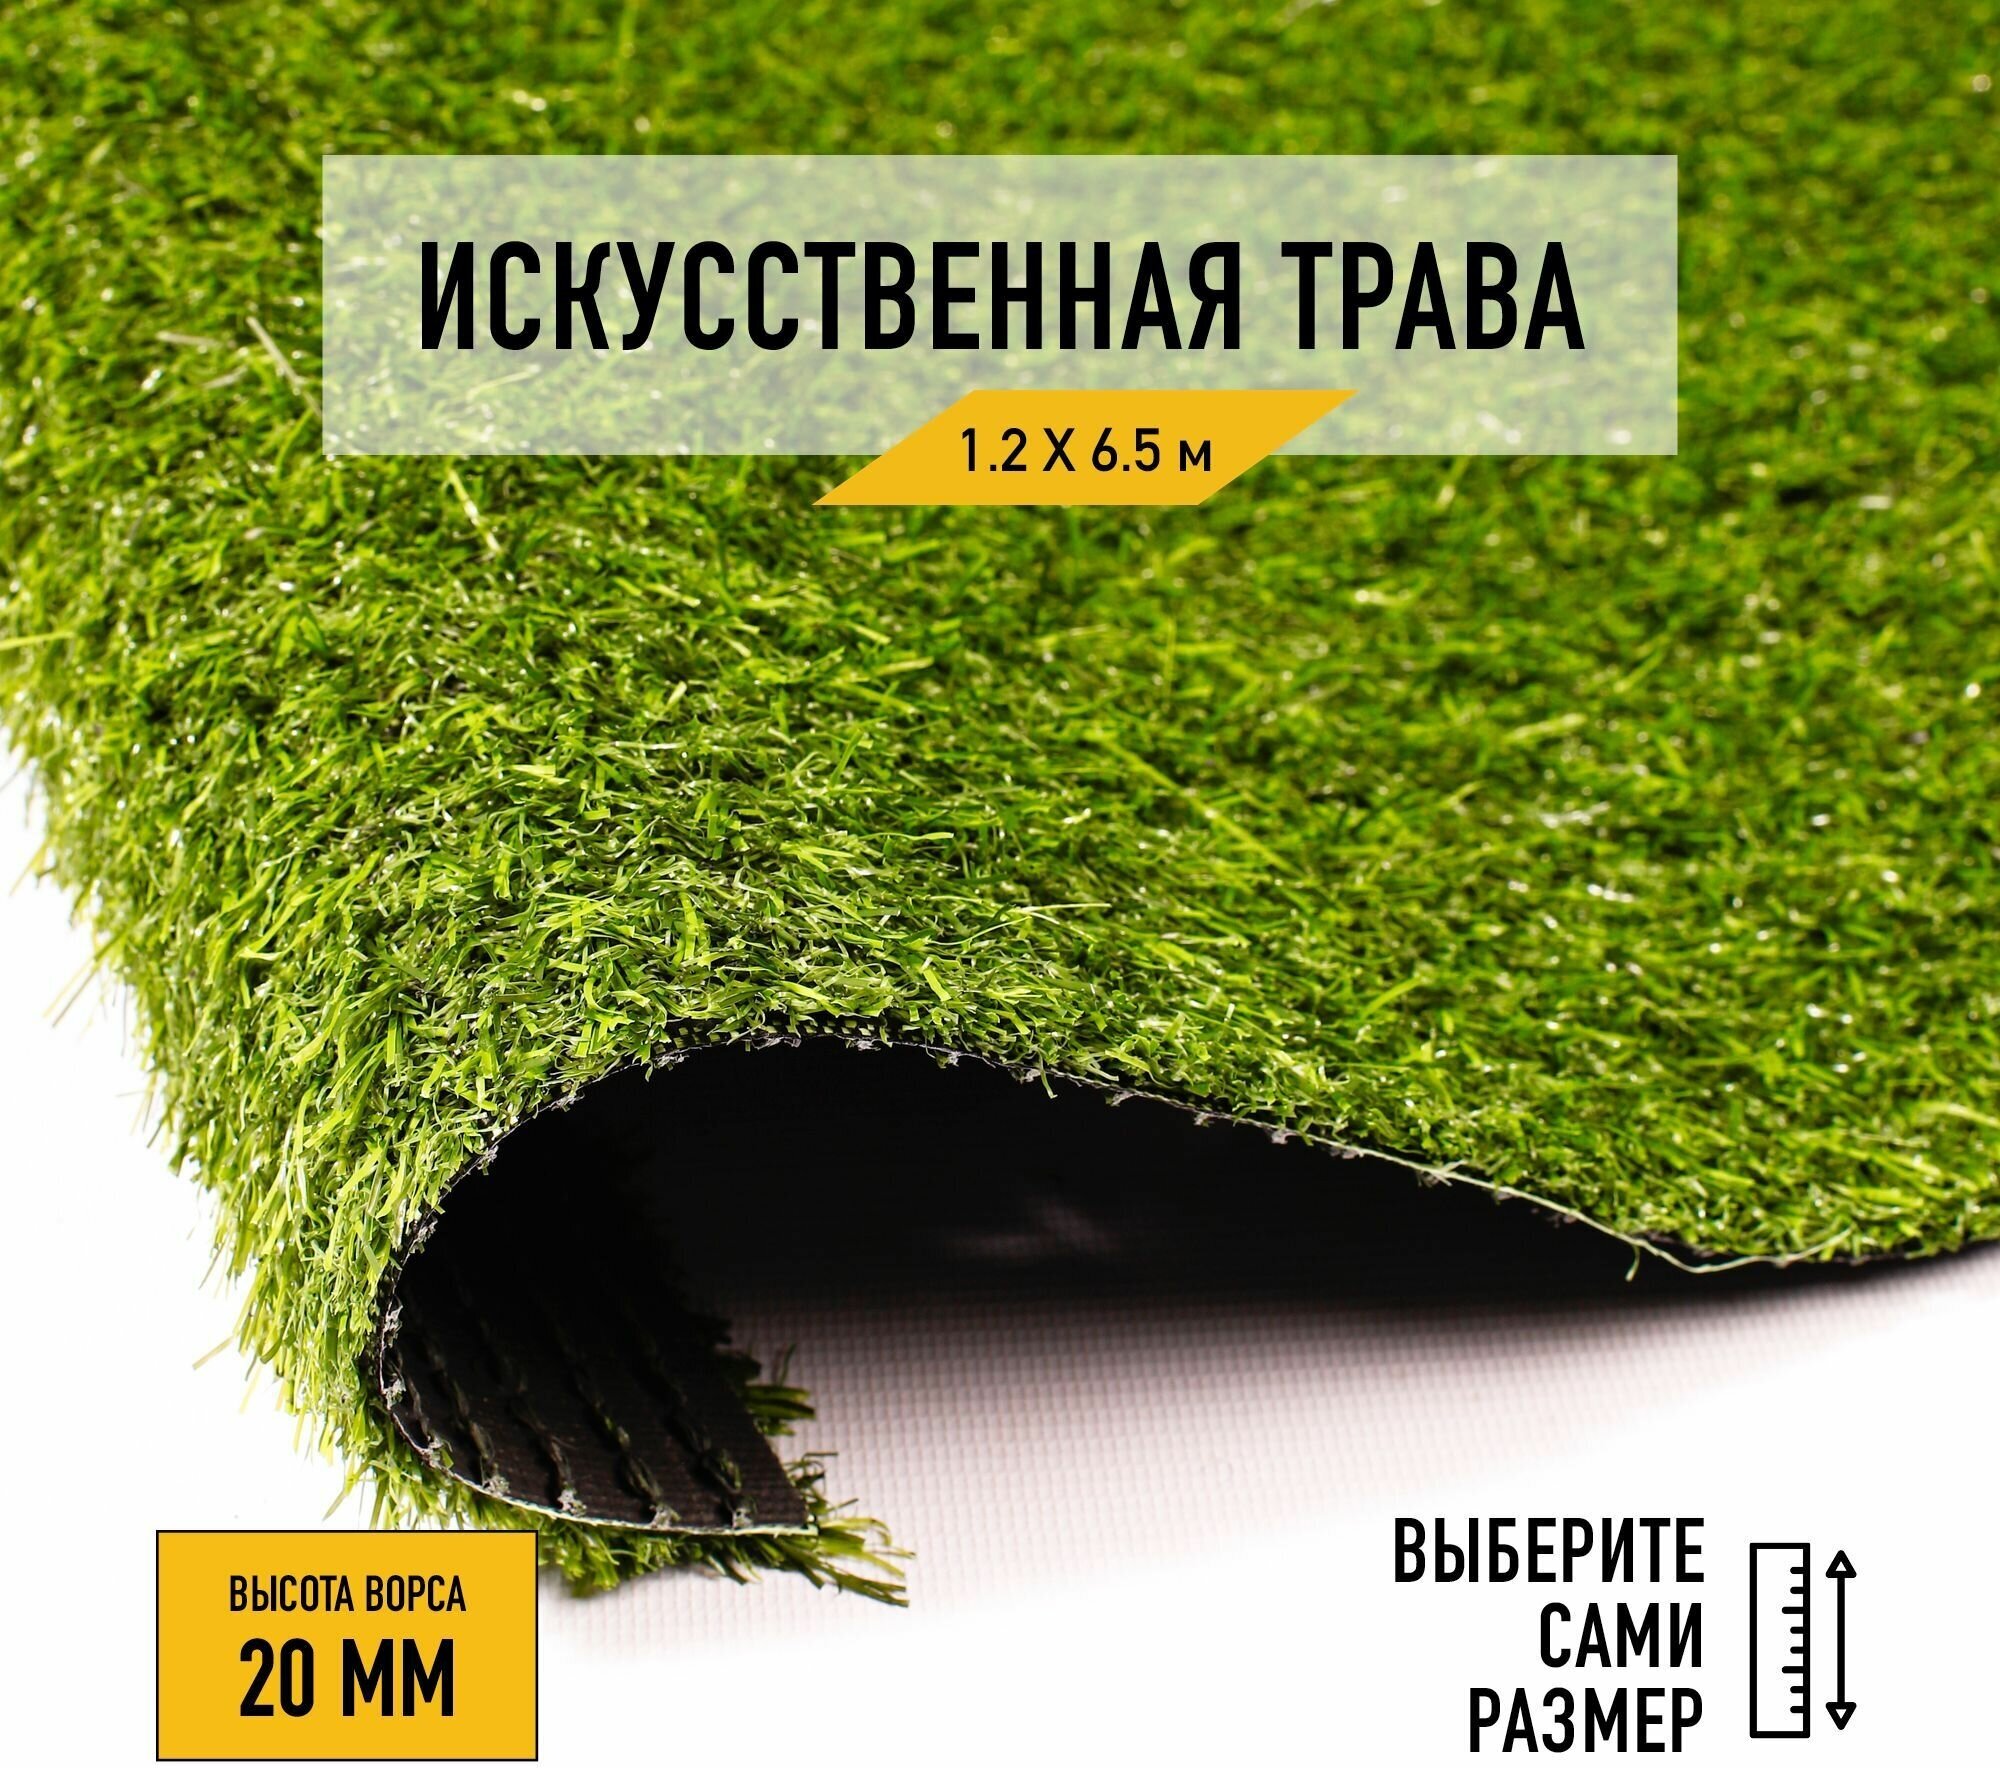 Искусственный газон в рулоне для декора 1,2х6,5м Premium Grass 20 Green, высота ворса 20 мм. Искусственная трава. - фотография № 10